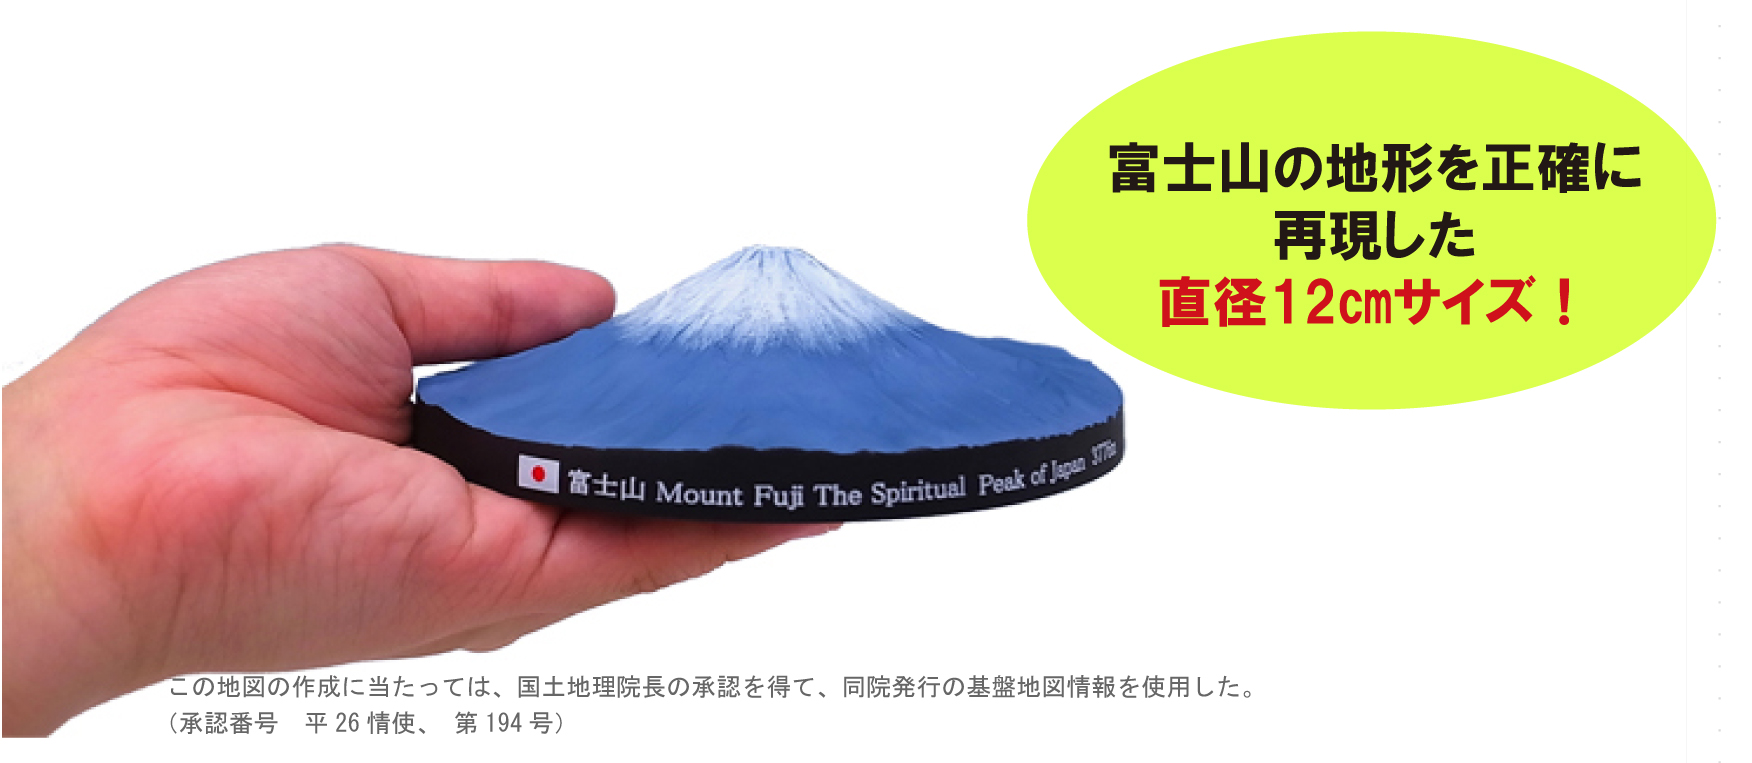 富士山の地形が手にとるように分かりやすい、富士山360°立体マップ 8月 